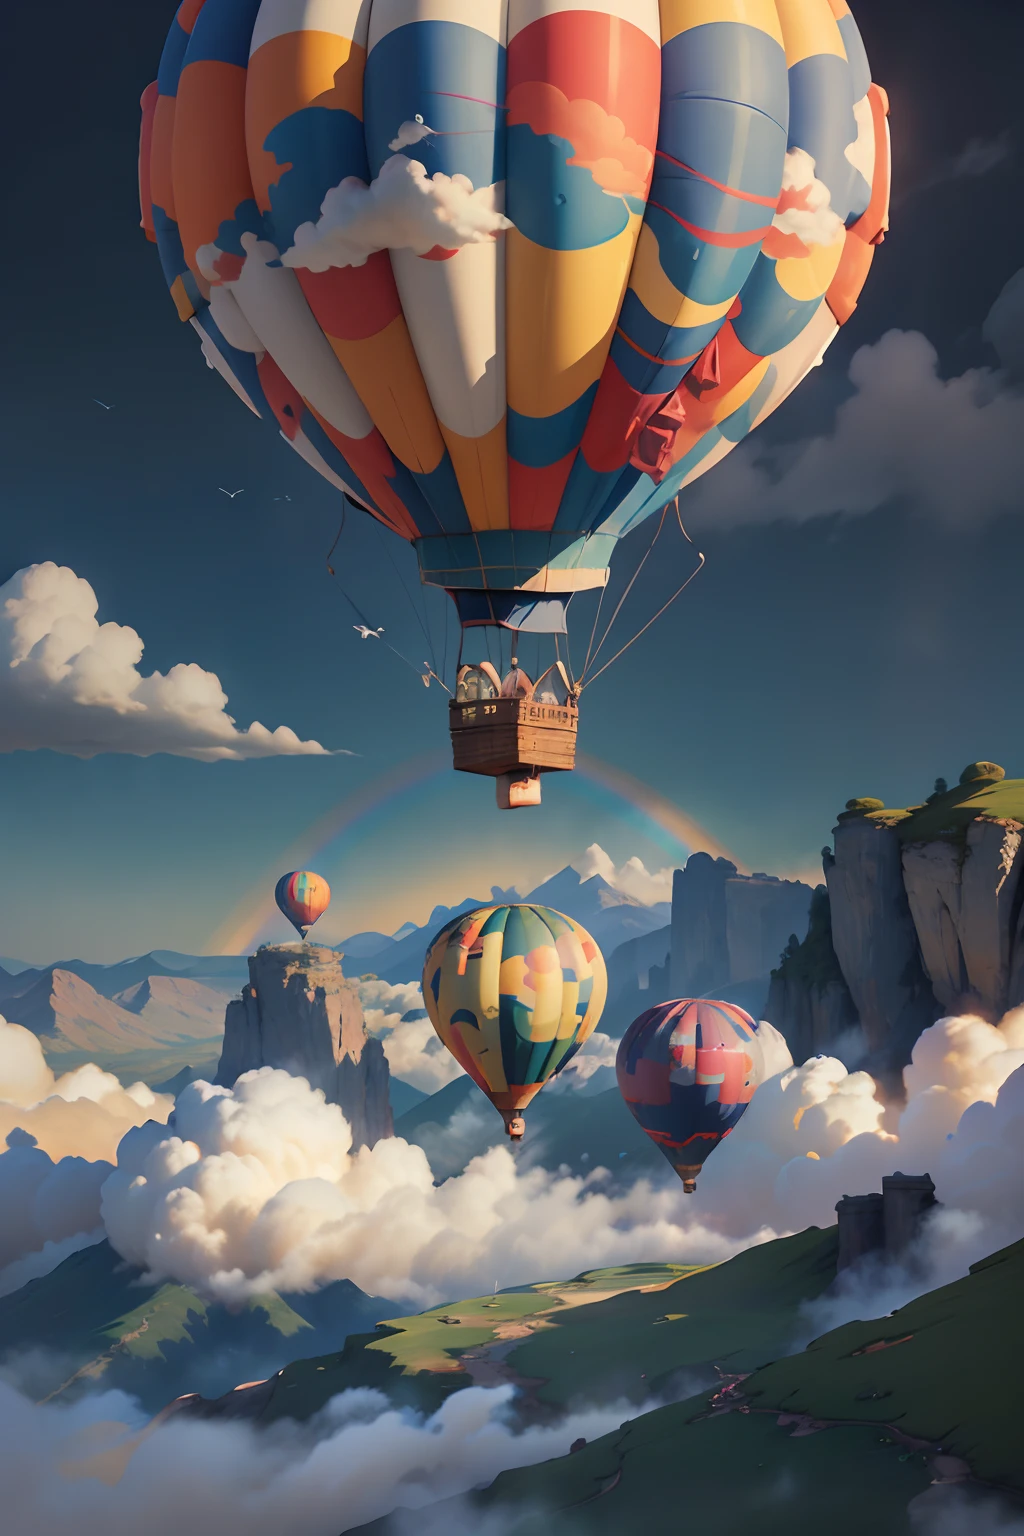 Elementos de detalhe：Balões de ar quente coloridos、Nuvens vibrantes no distante、pássaros voando alto、prados banhados pelo sol、Esplêndido arco-íris